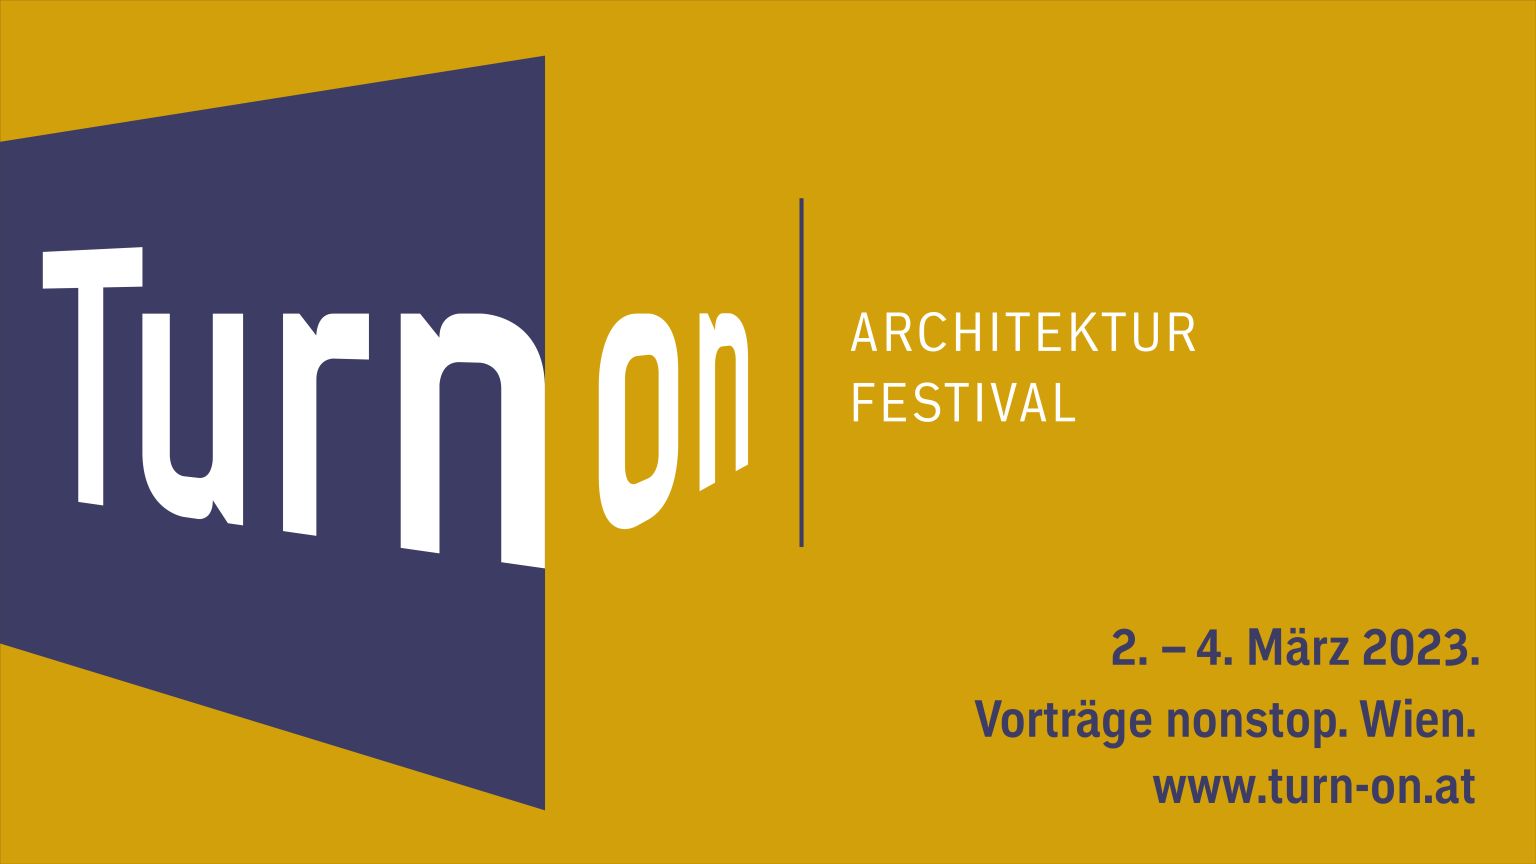 Architekturfestival TURN ON findet am 2., 3. und 4. März 2023 statt